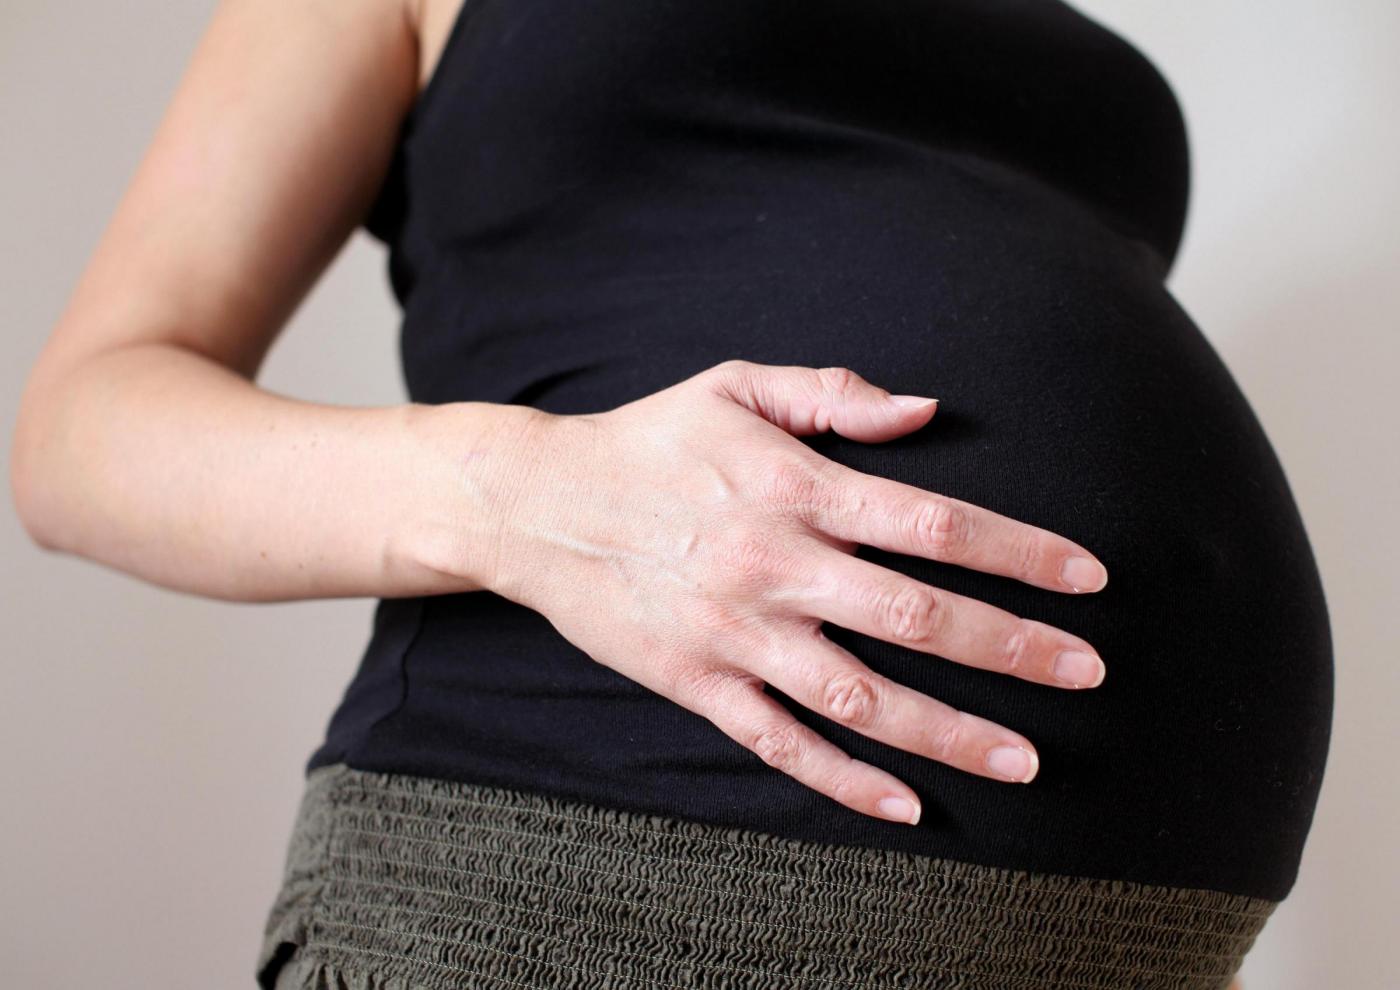 Fertility Day flop in Italia: ecco lo spot sulla fertilità realizzato in Danimarca